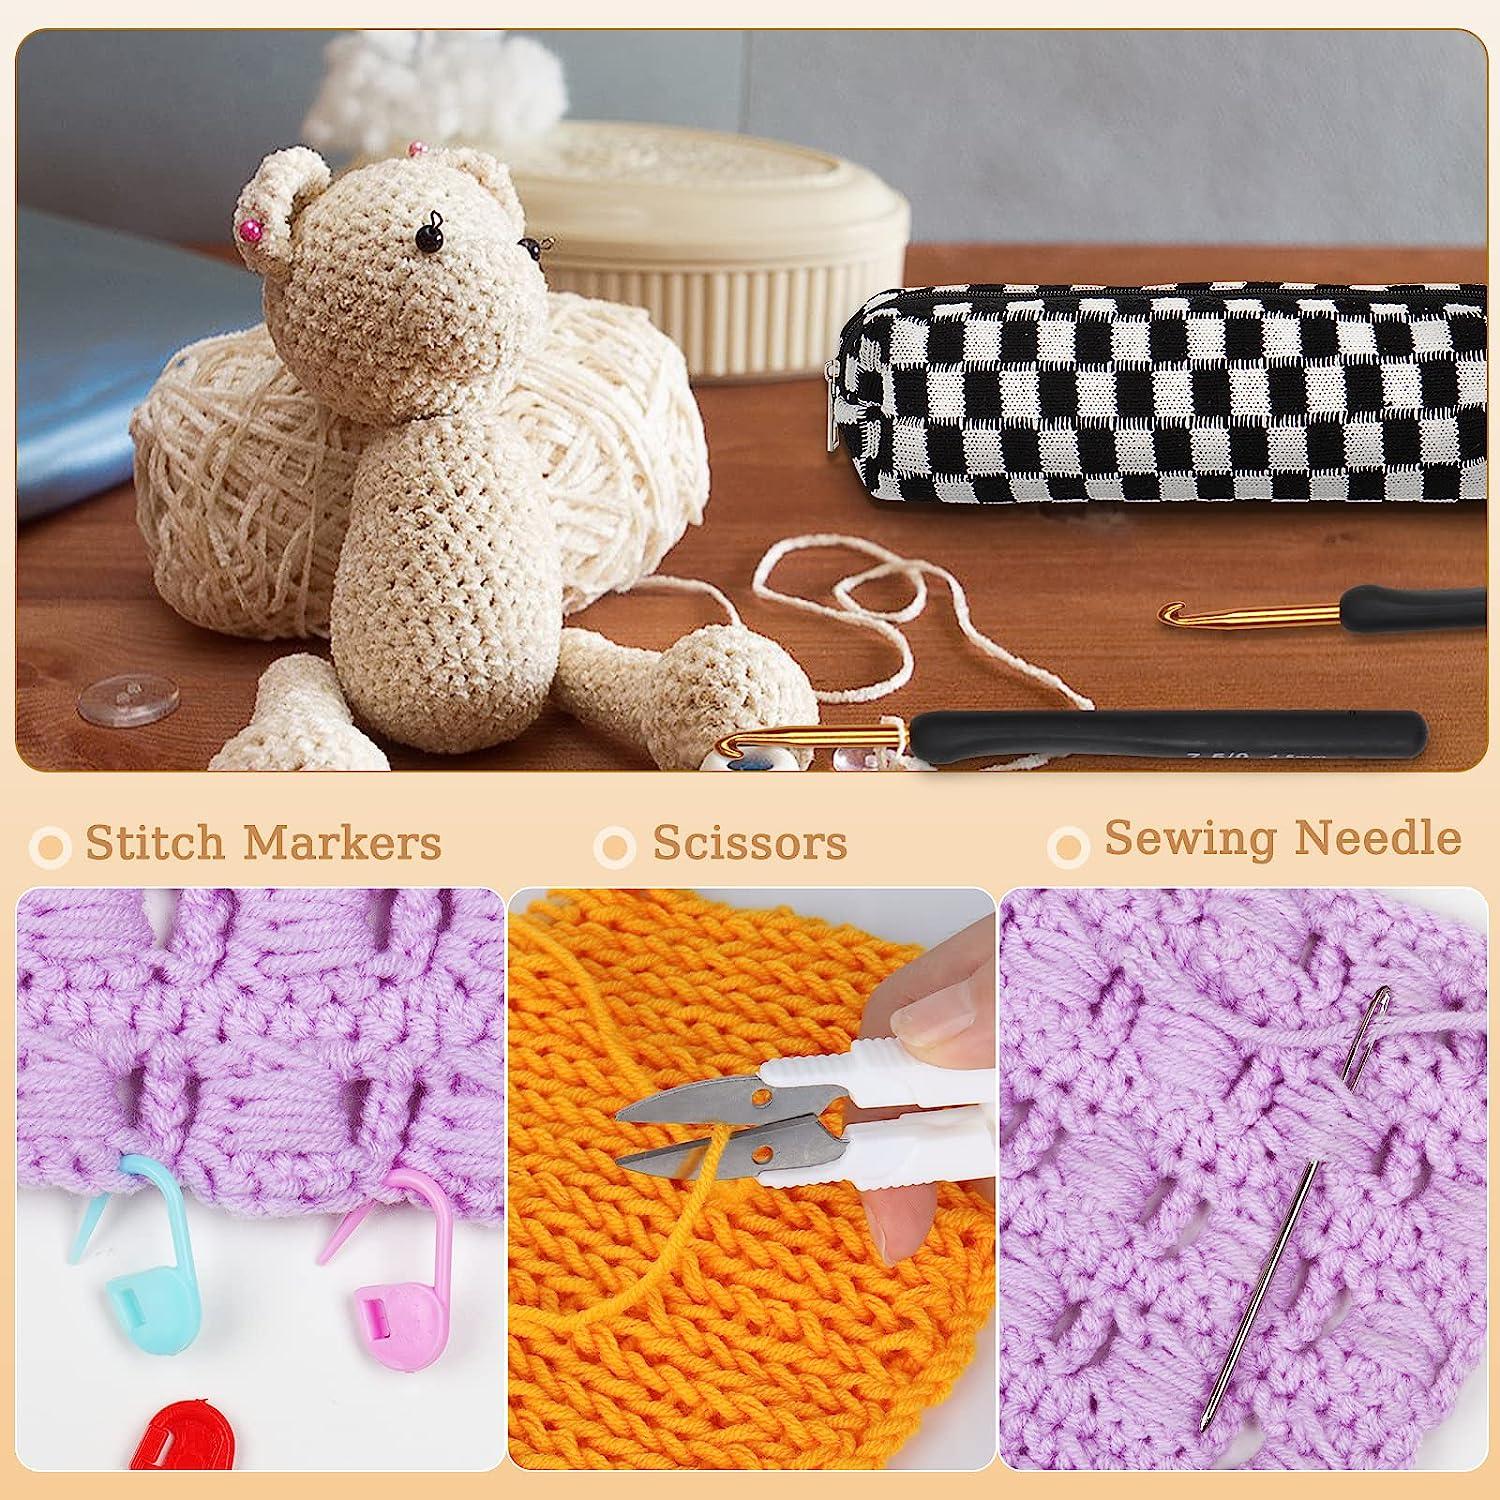 7 Sizes Crochet Hooks Set, Large Crochet Hooks for Chunky Yarn, 7mm-20mm  Huge Crochet Needles, Ergonomic Knitting Needles with Big-Eye Blunt Needles